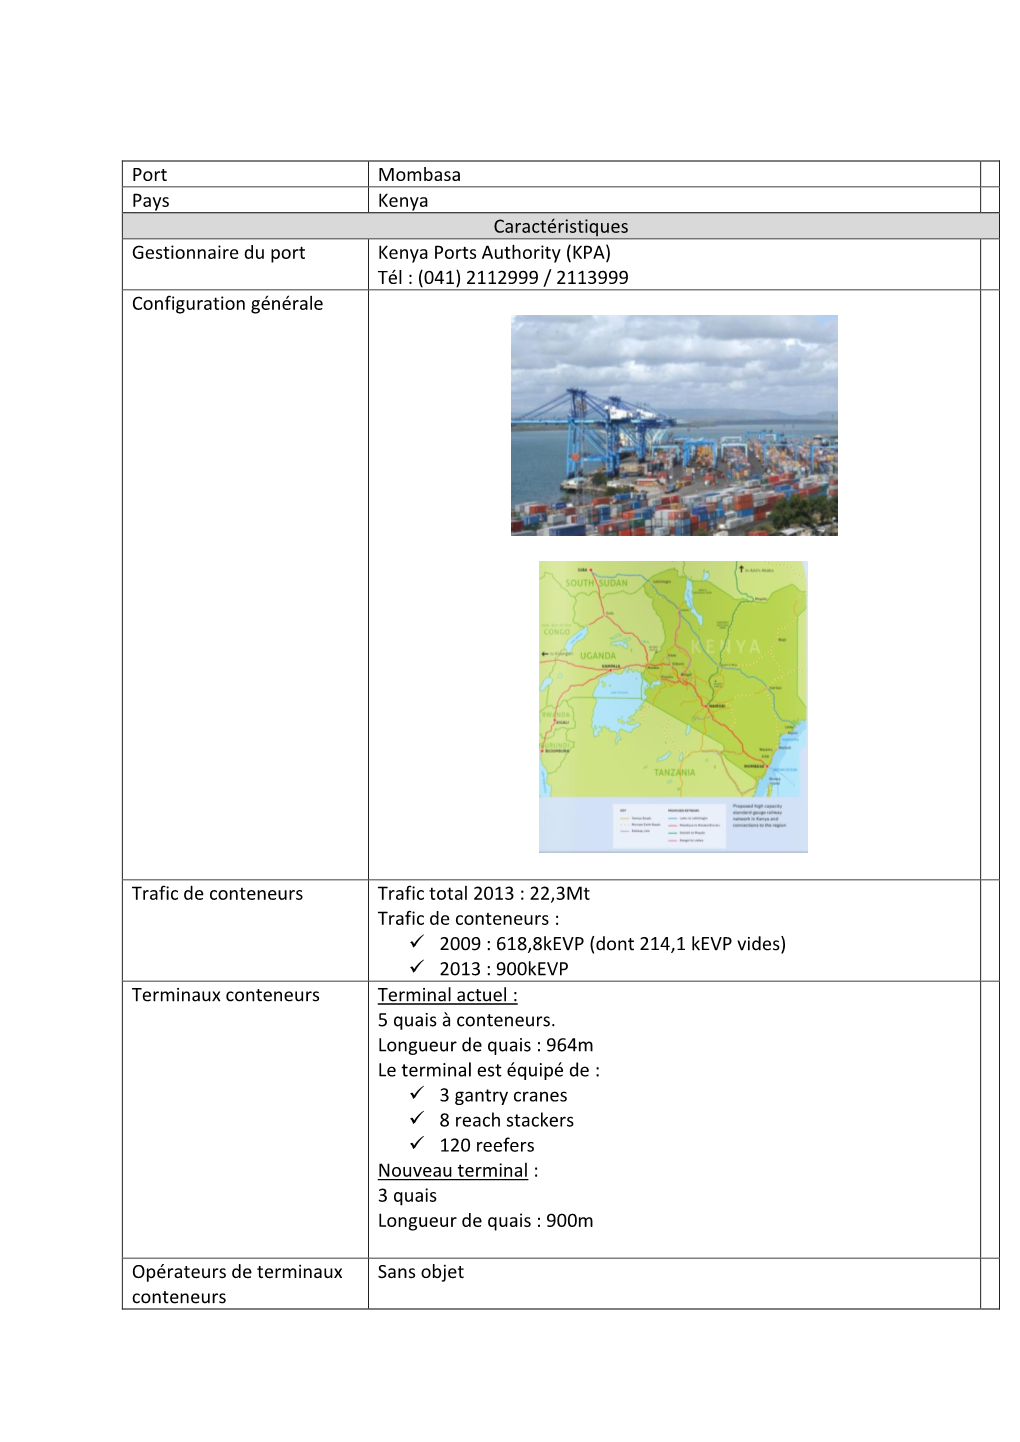 Port Mombasa Pays Kenya Caractéristiques Gestionnaire Du Port Kenya Ports Authority (KPA) Tél : (041) 2112999 / 2113999 Configuration Générale